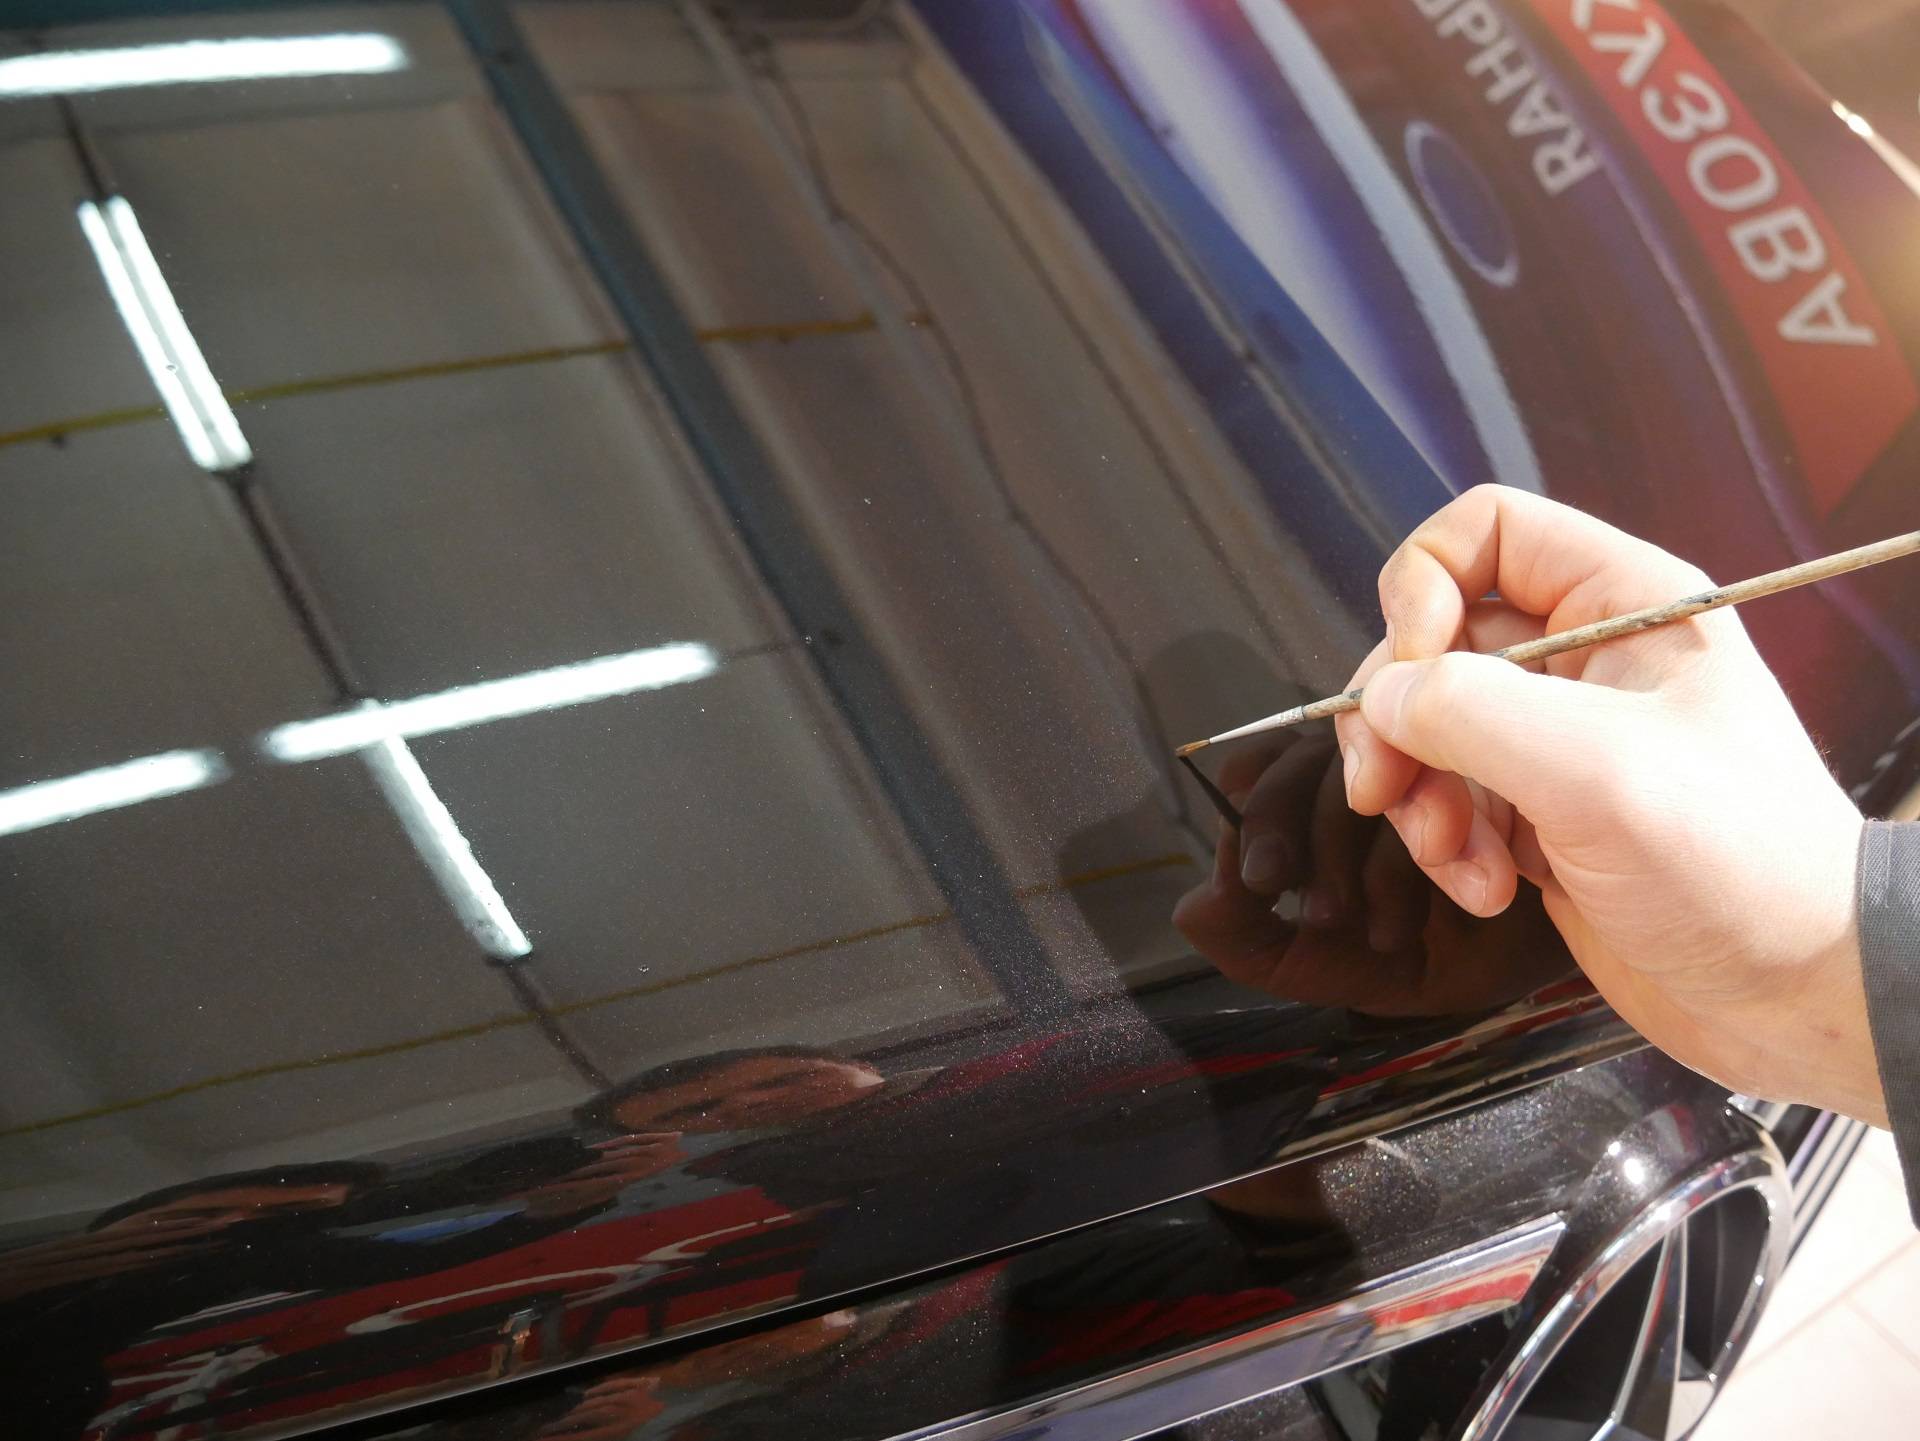 Как правильно подкрасить сколы на авто своими руками: инструкция